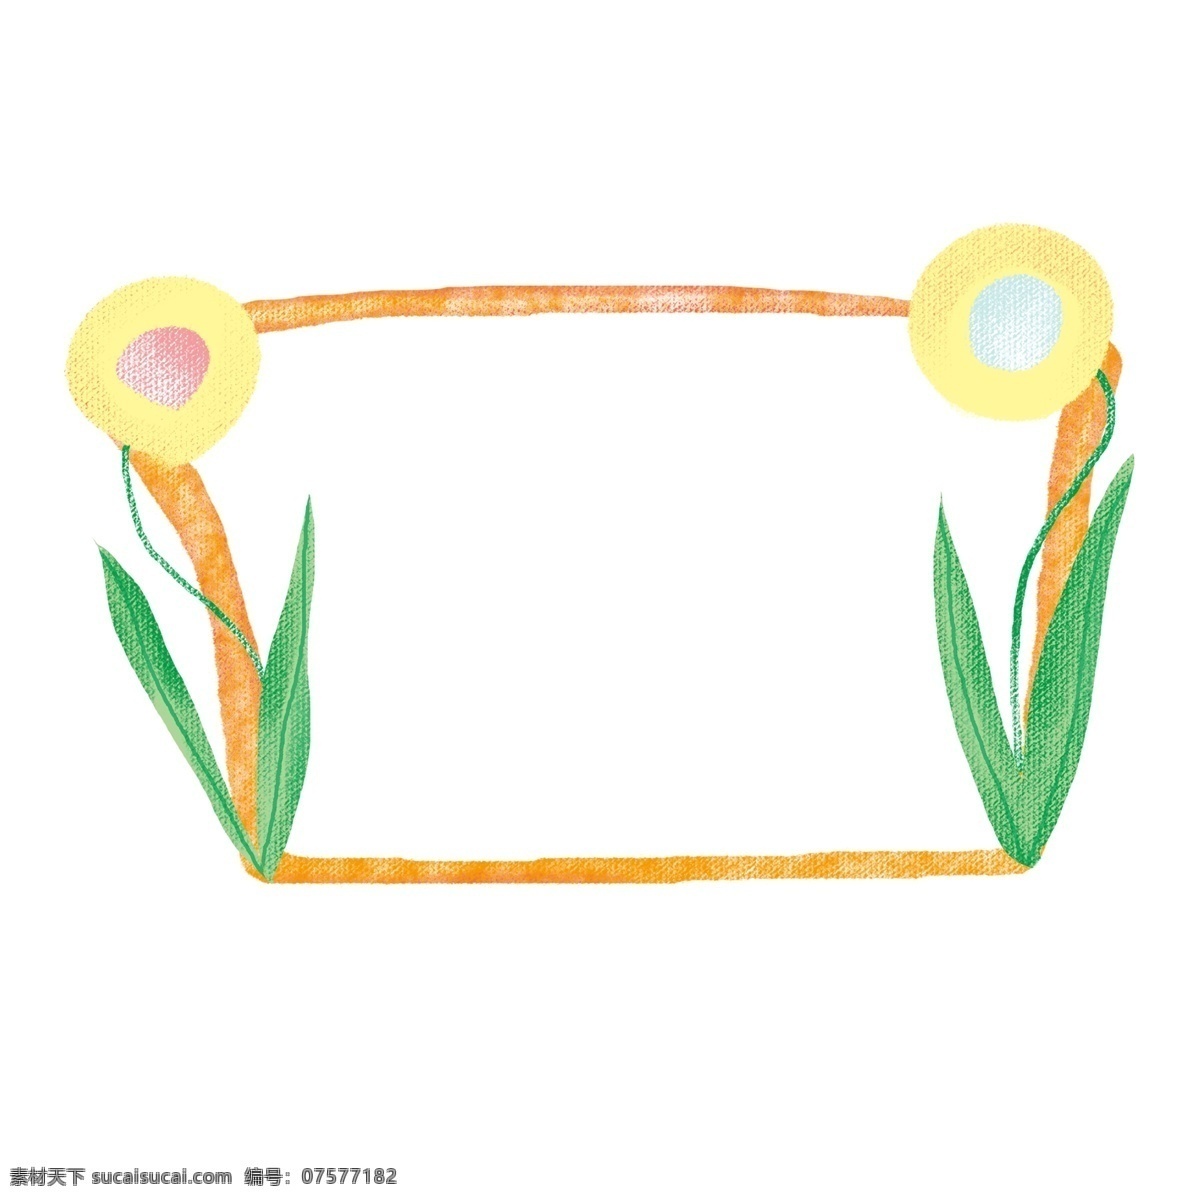 春夏 花朵 边框 绿色 粉嫩 蓝色 橙色 云朵 春天 夏天 花边 框架 装饰 实用 可爱 温暖 生机 活力 植物 花朵边框